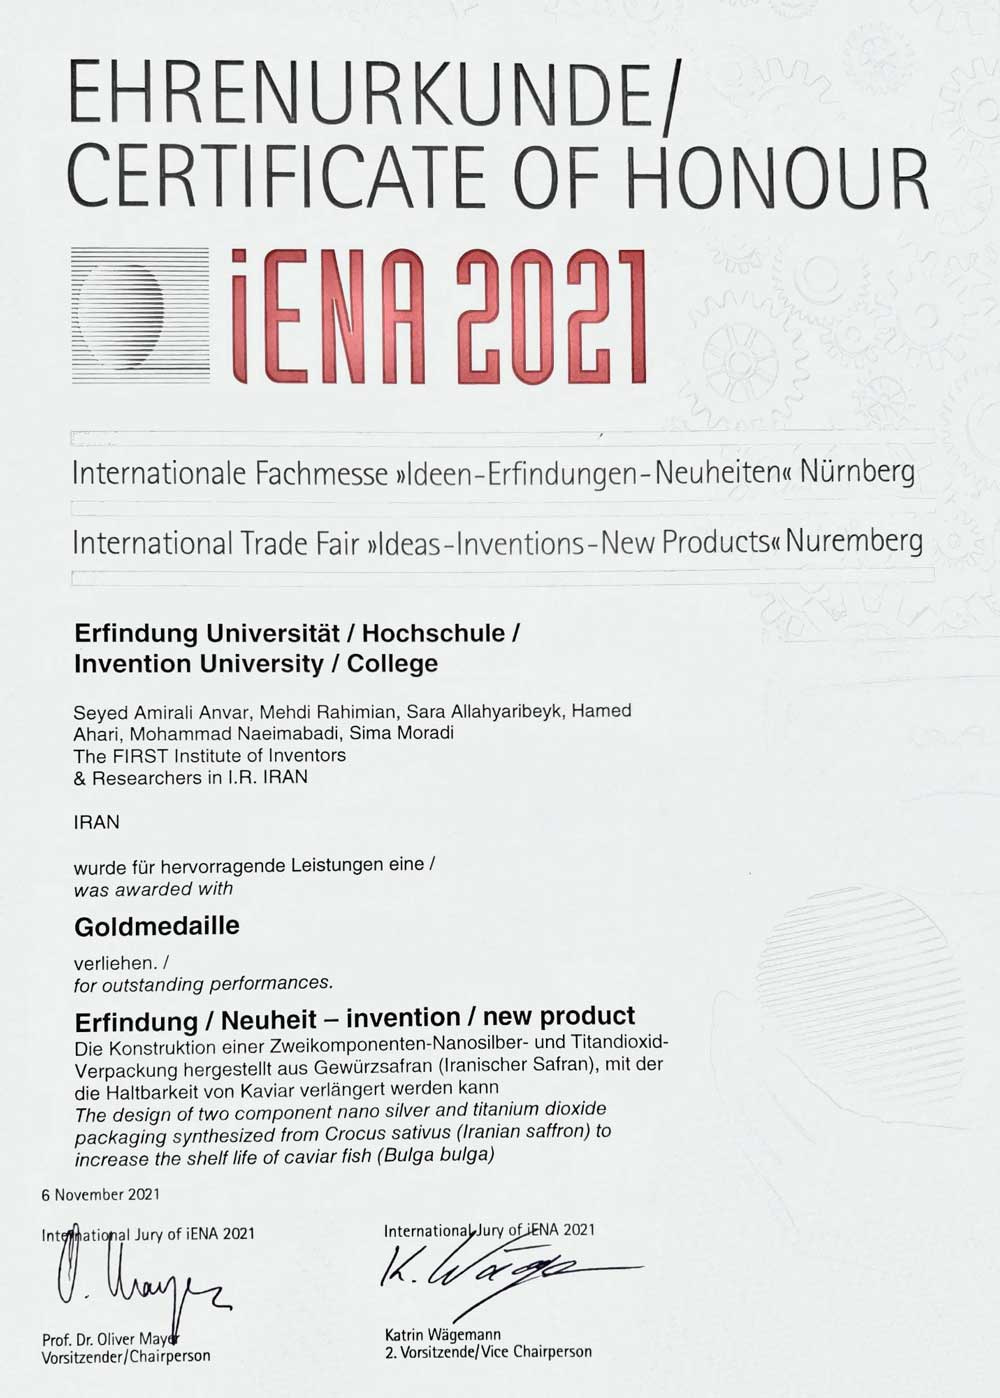 iena-2021-certificate-img.jpg